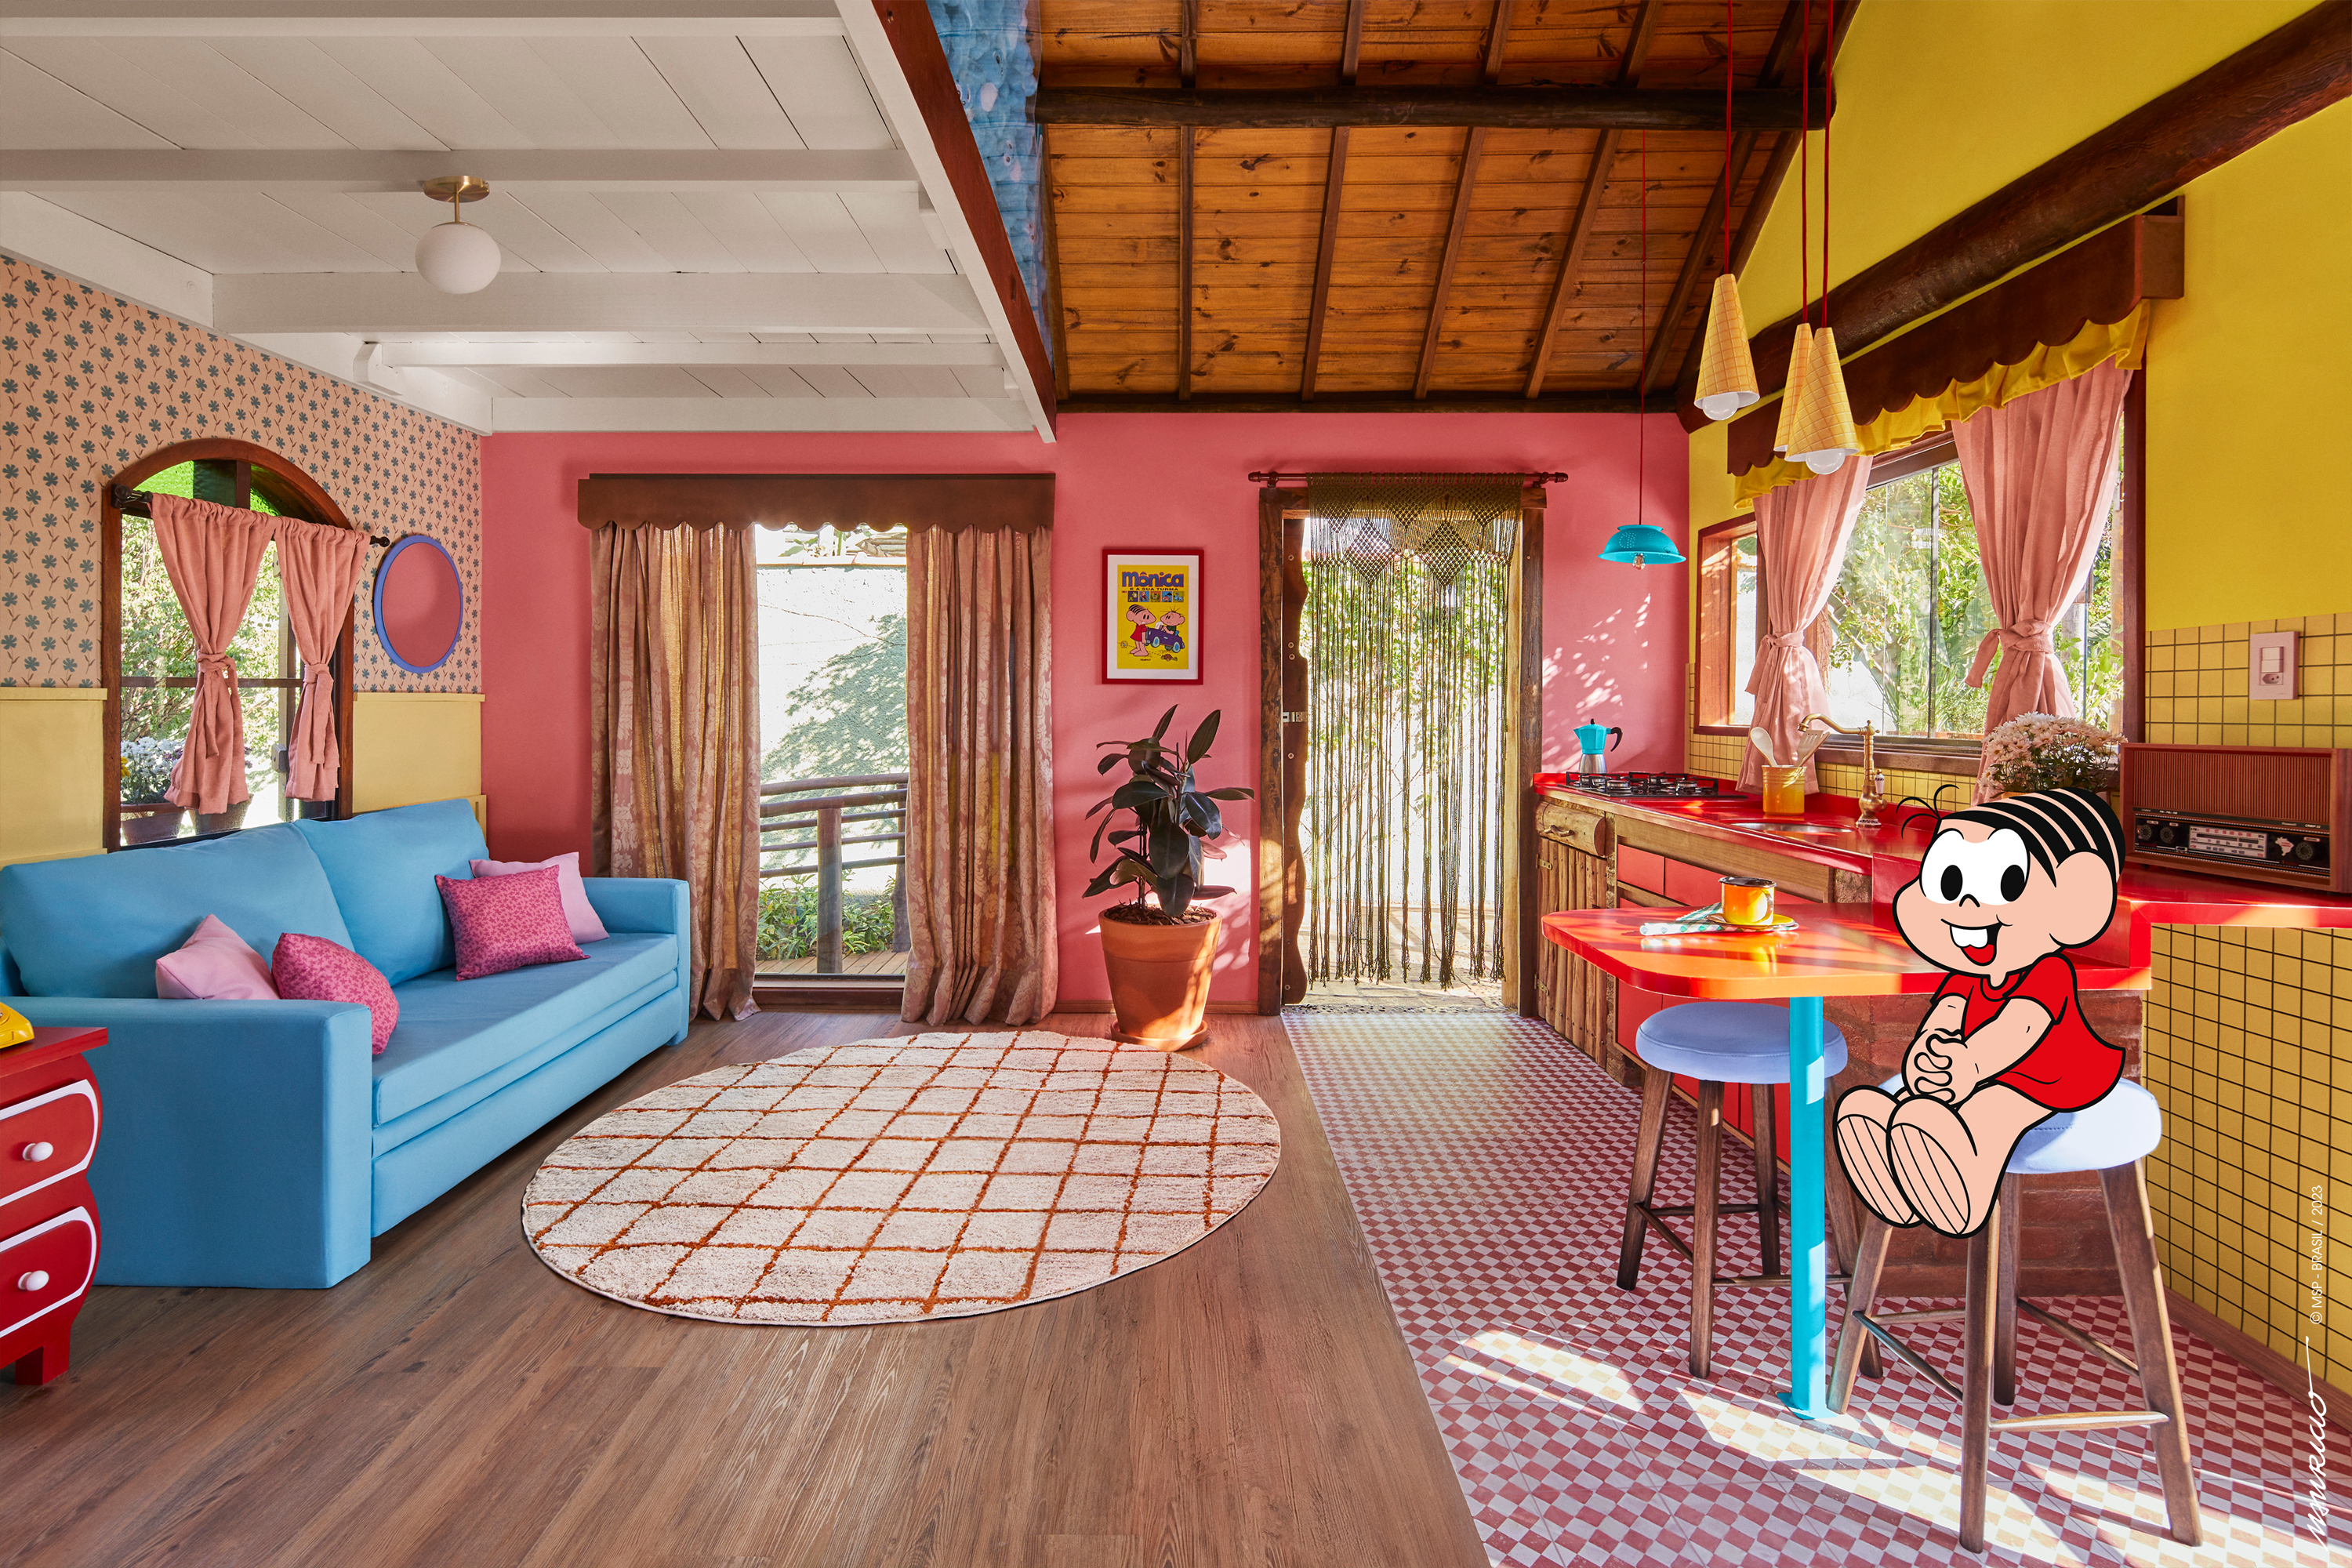 Férias com as crianças: 10 casas de férias para alugar no Airbnb